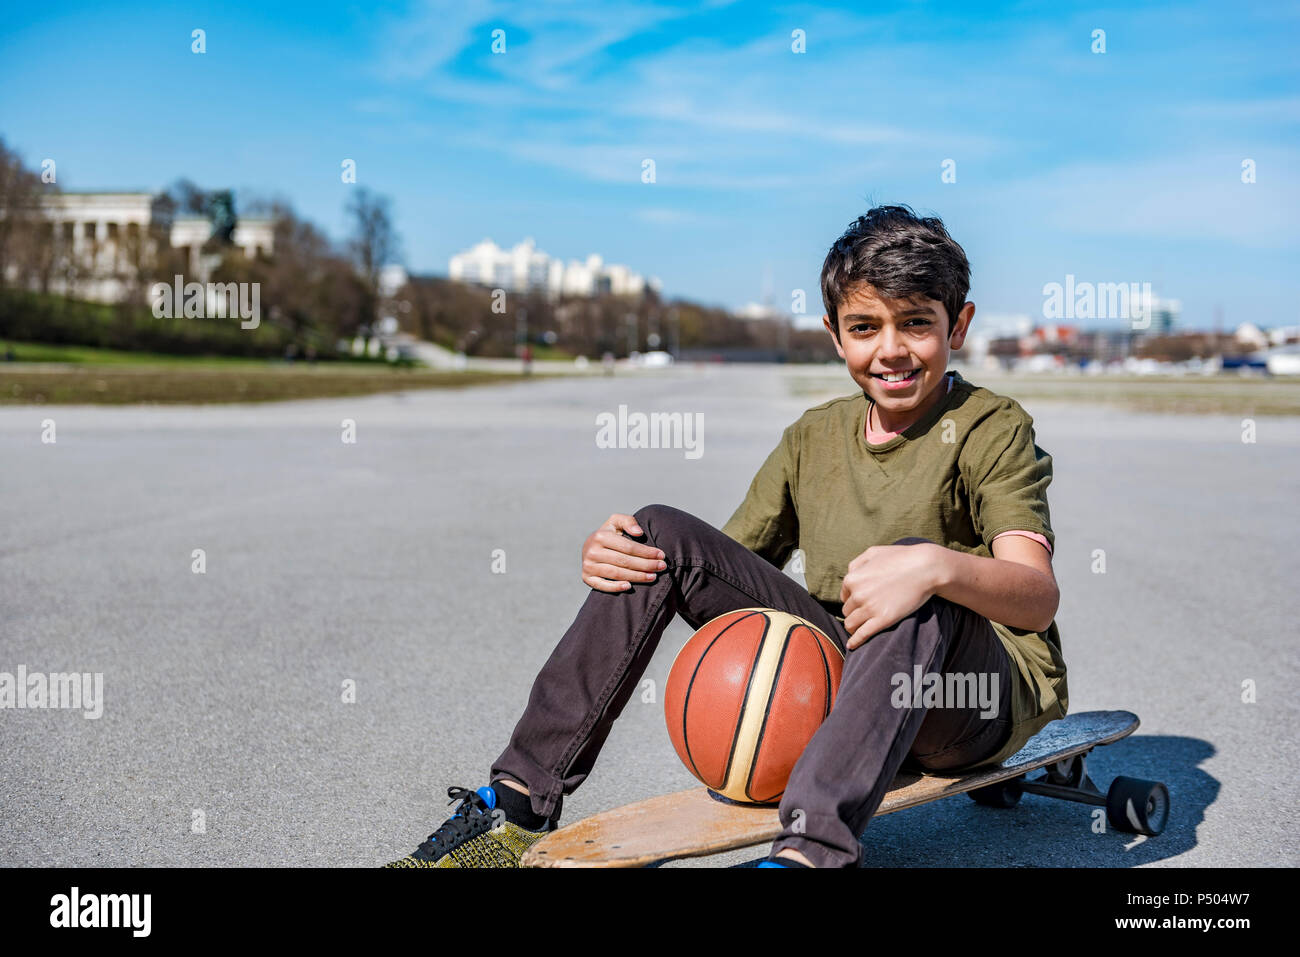 Portrait of smiling boy with longboard et de basket-ball extérieur Banque D'Images